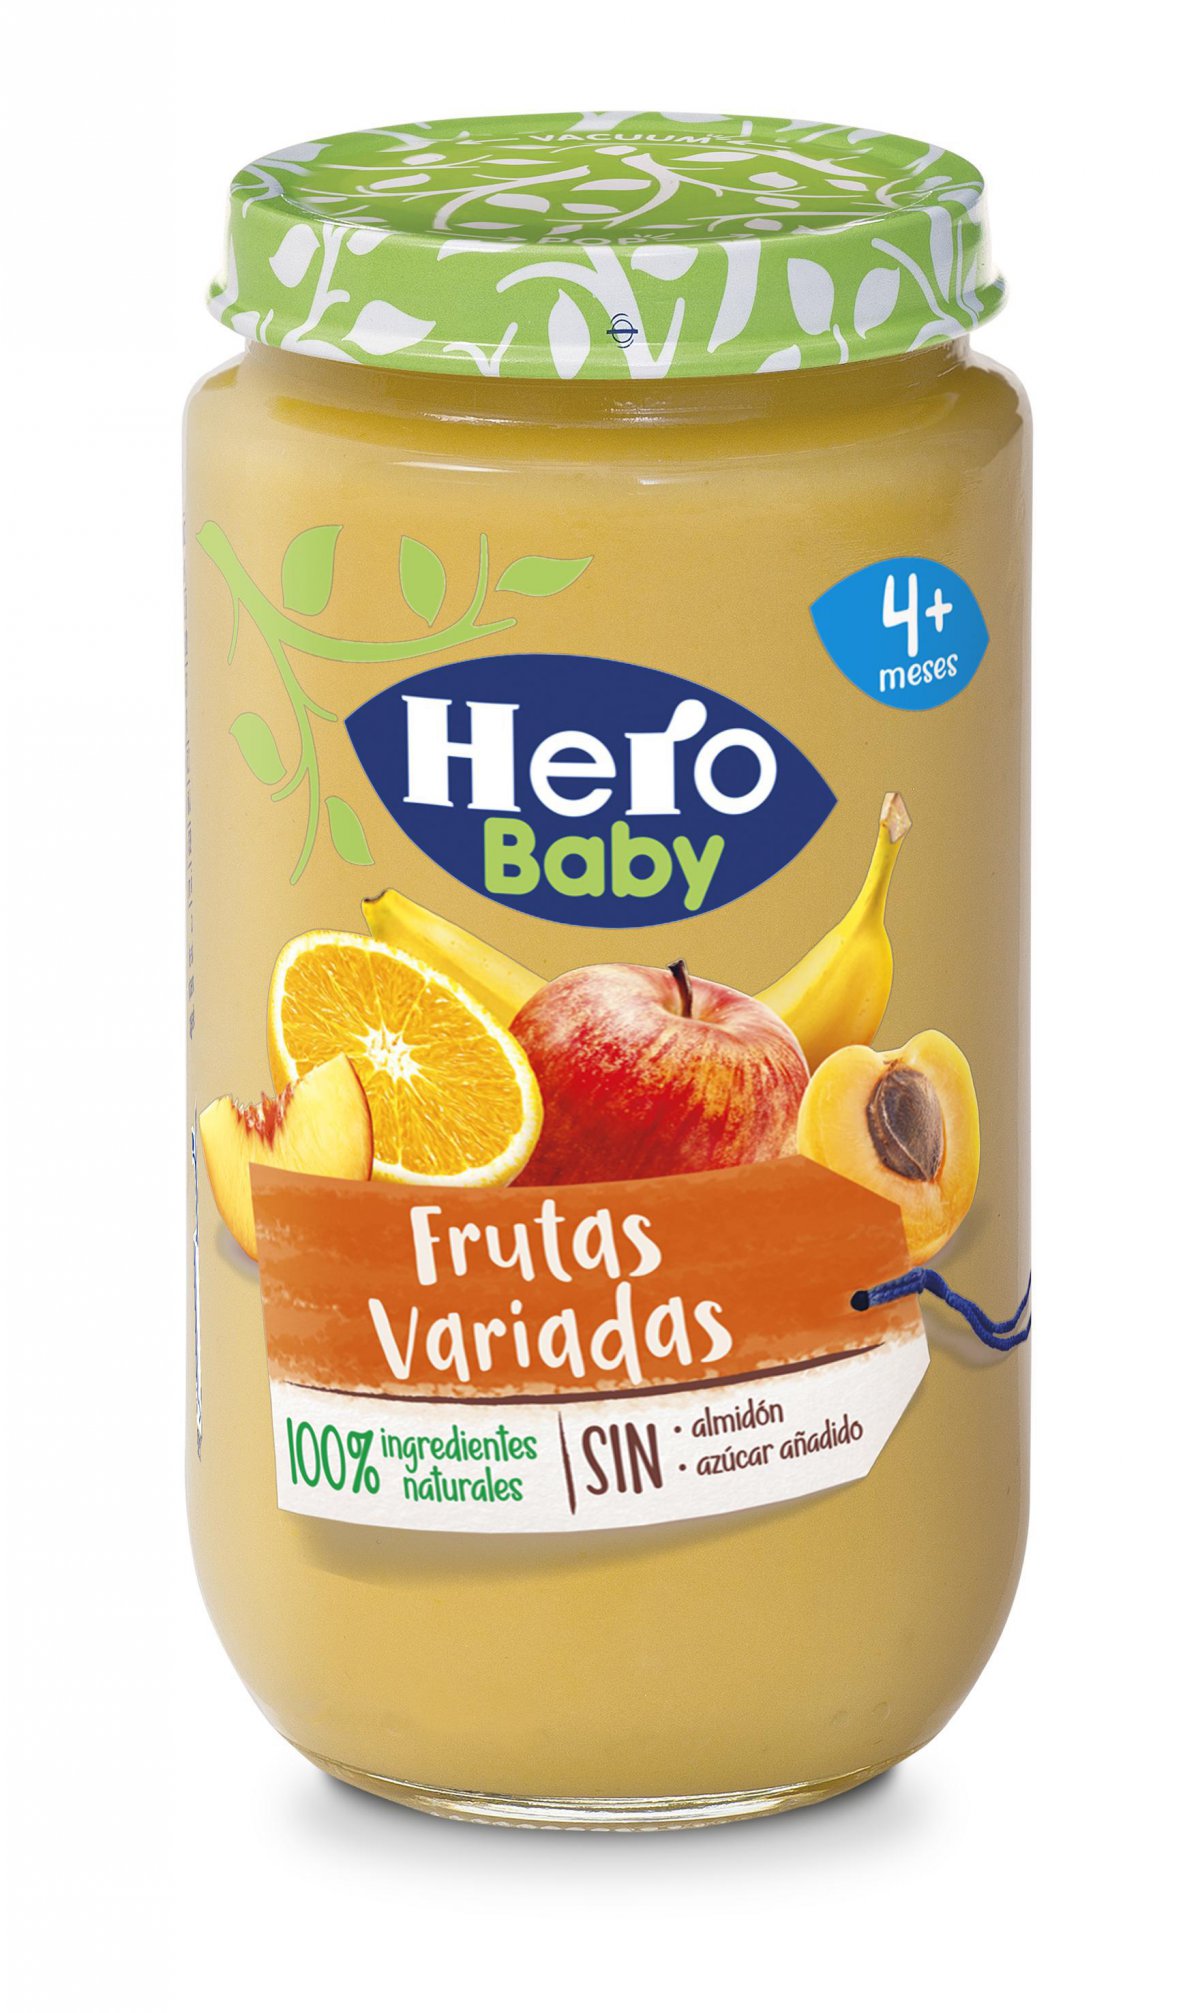 Potito frutas variadas - hero baby